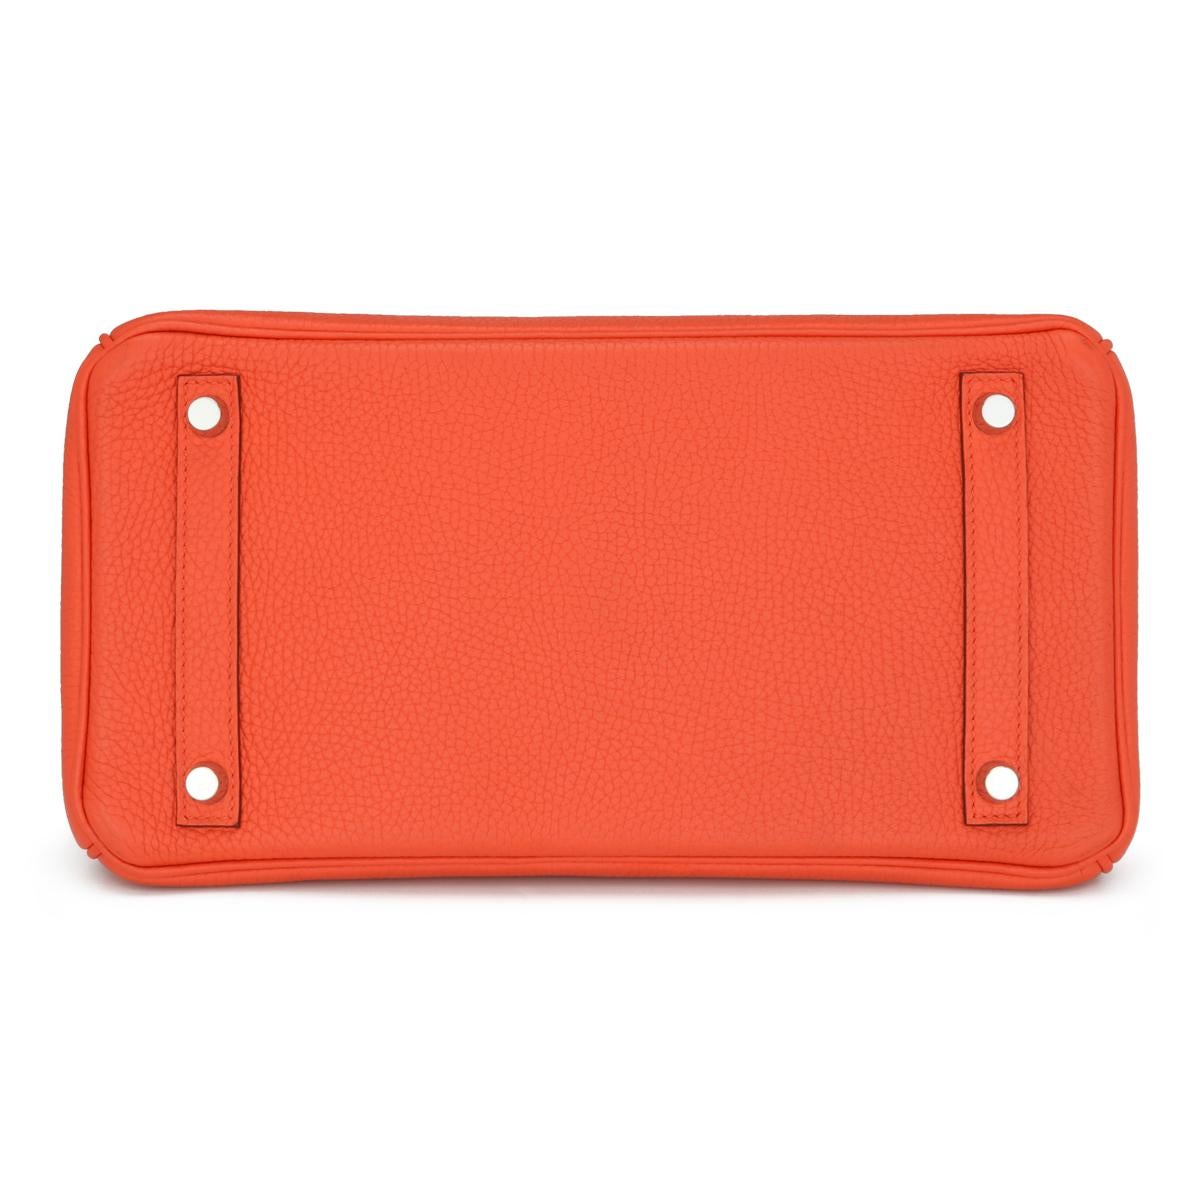 Hermès Birkin Bag 30cm Poppy Orange Togo Leather Palladium Hardware Stamp T 2015 For Sale 2